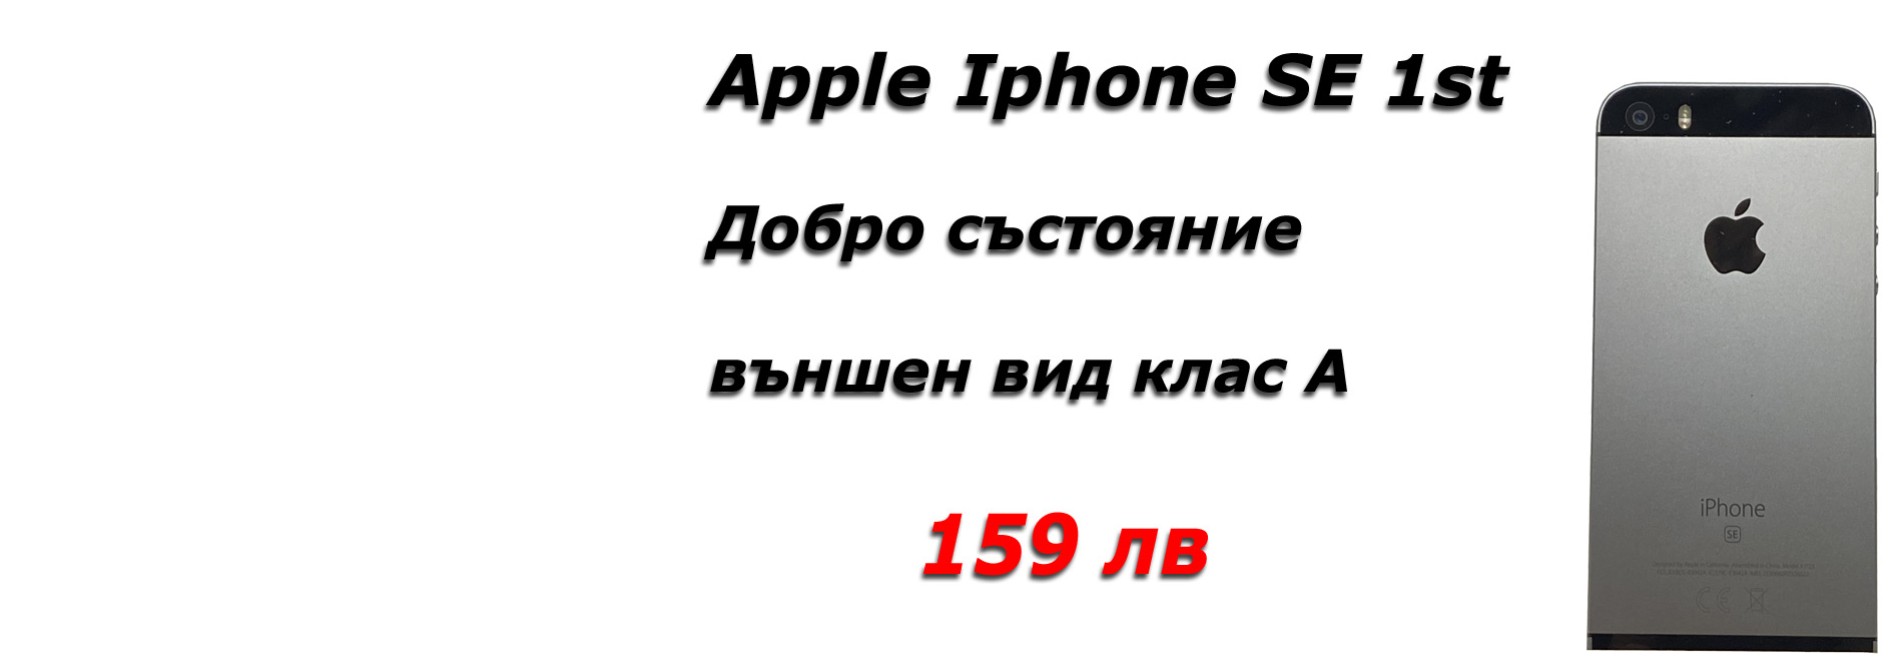 Apple Iphone телефони втора ръка